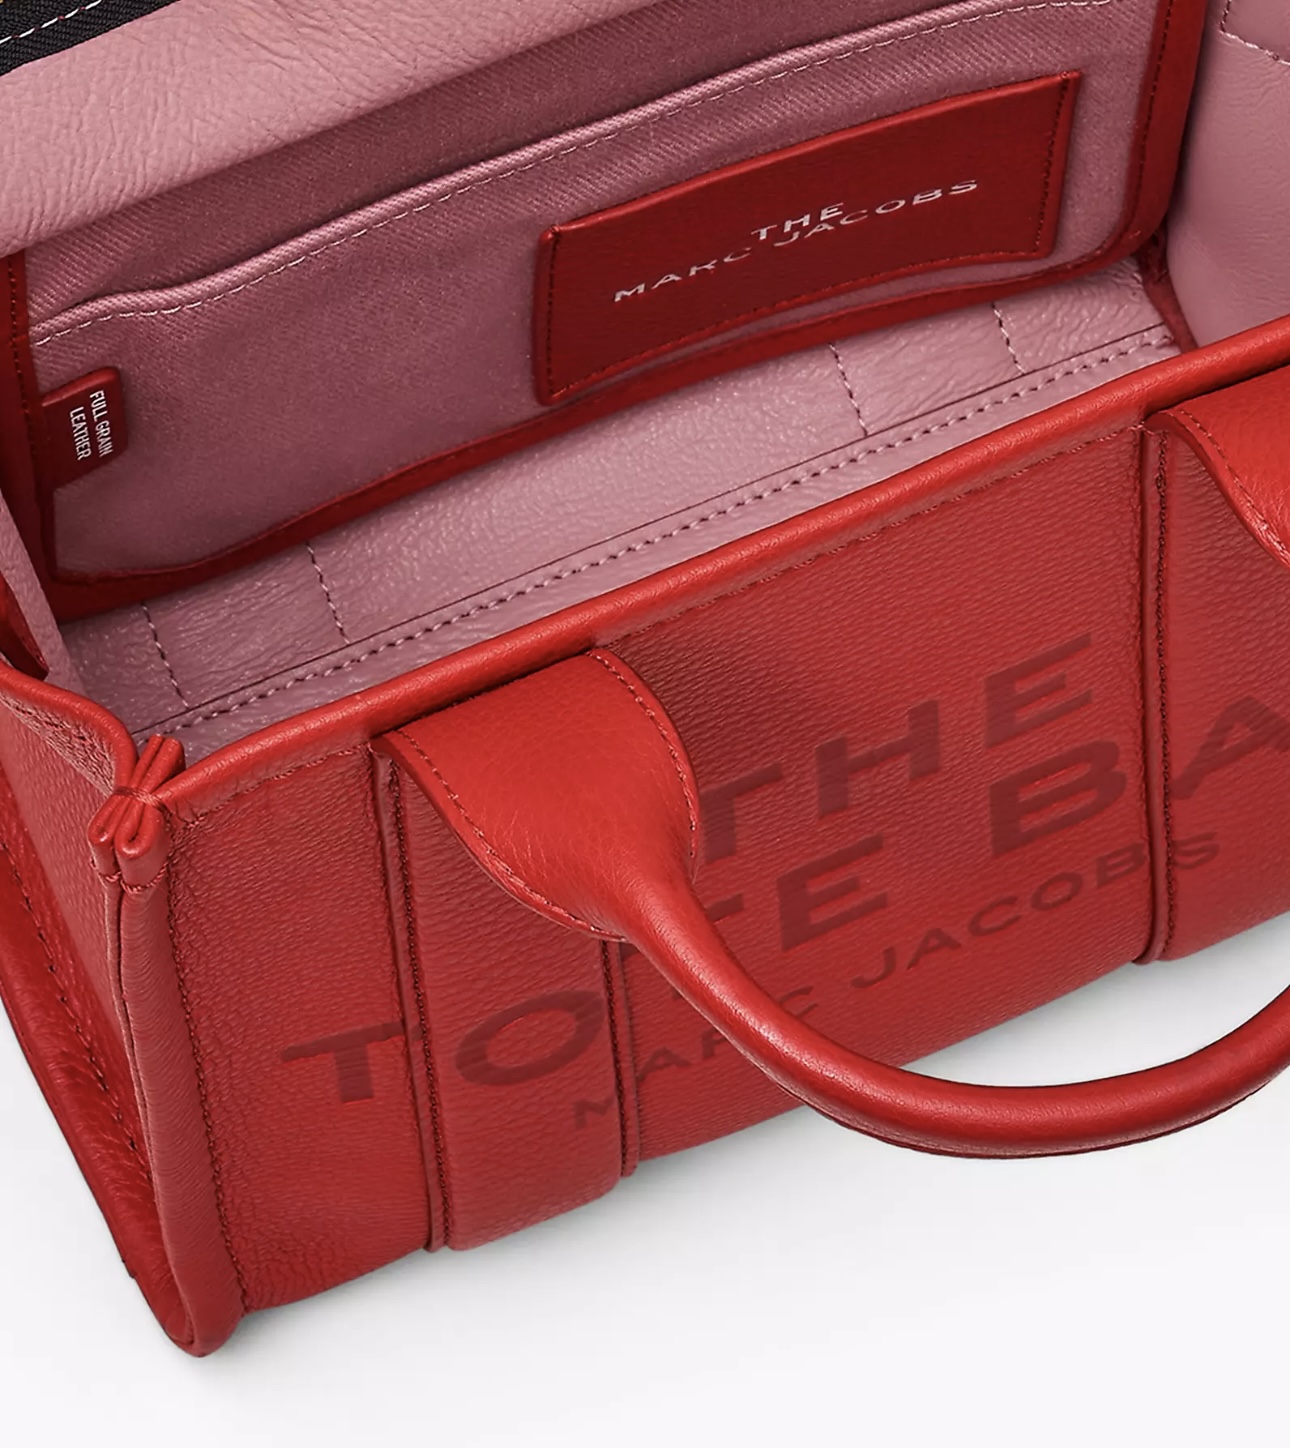 A red handbag